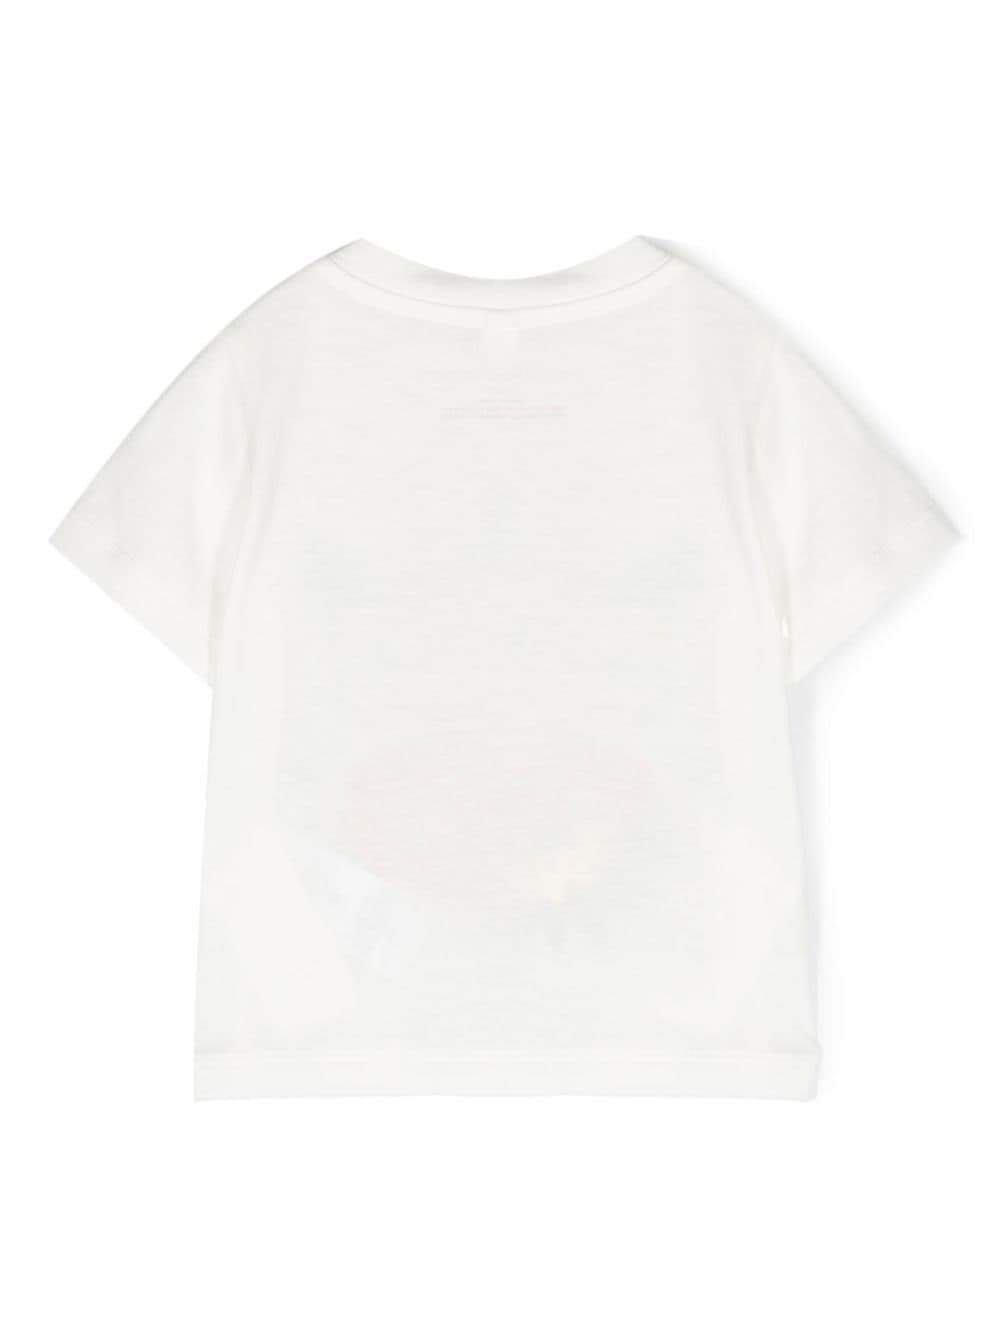 T-shirt bianca per neonato con stampa